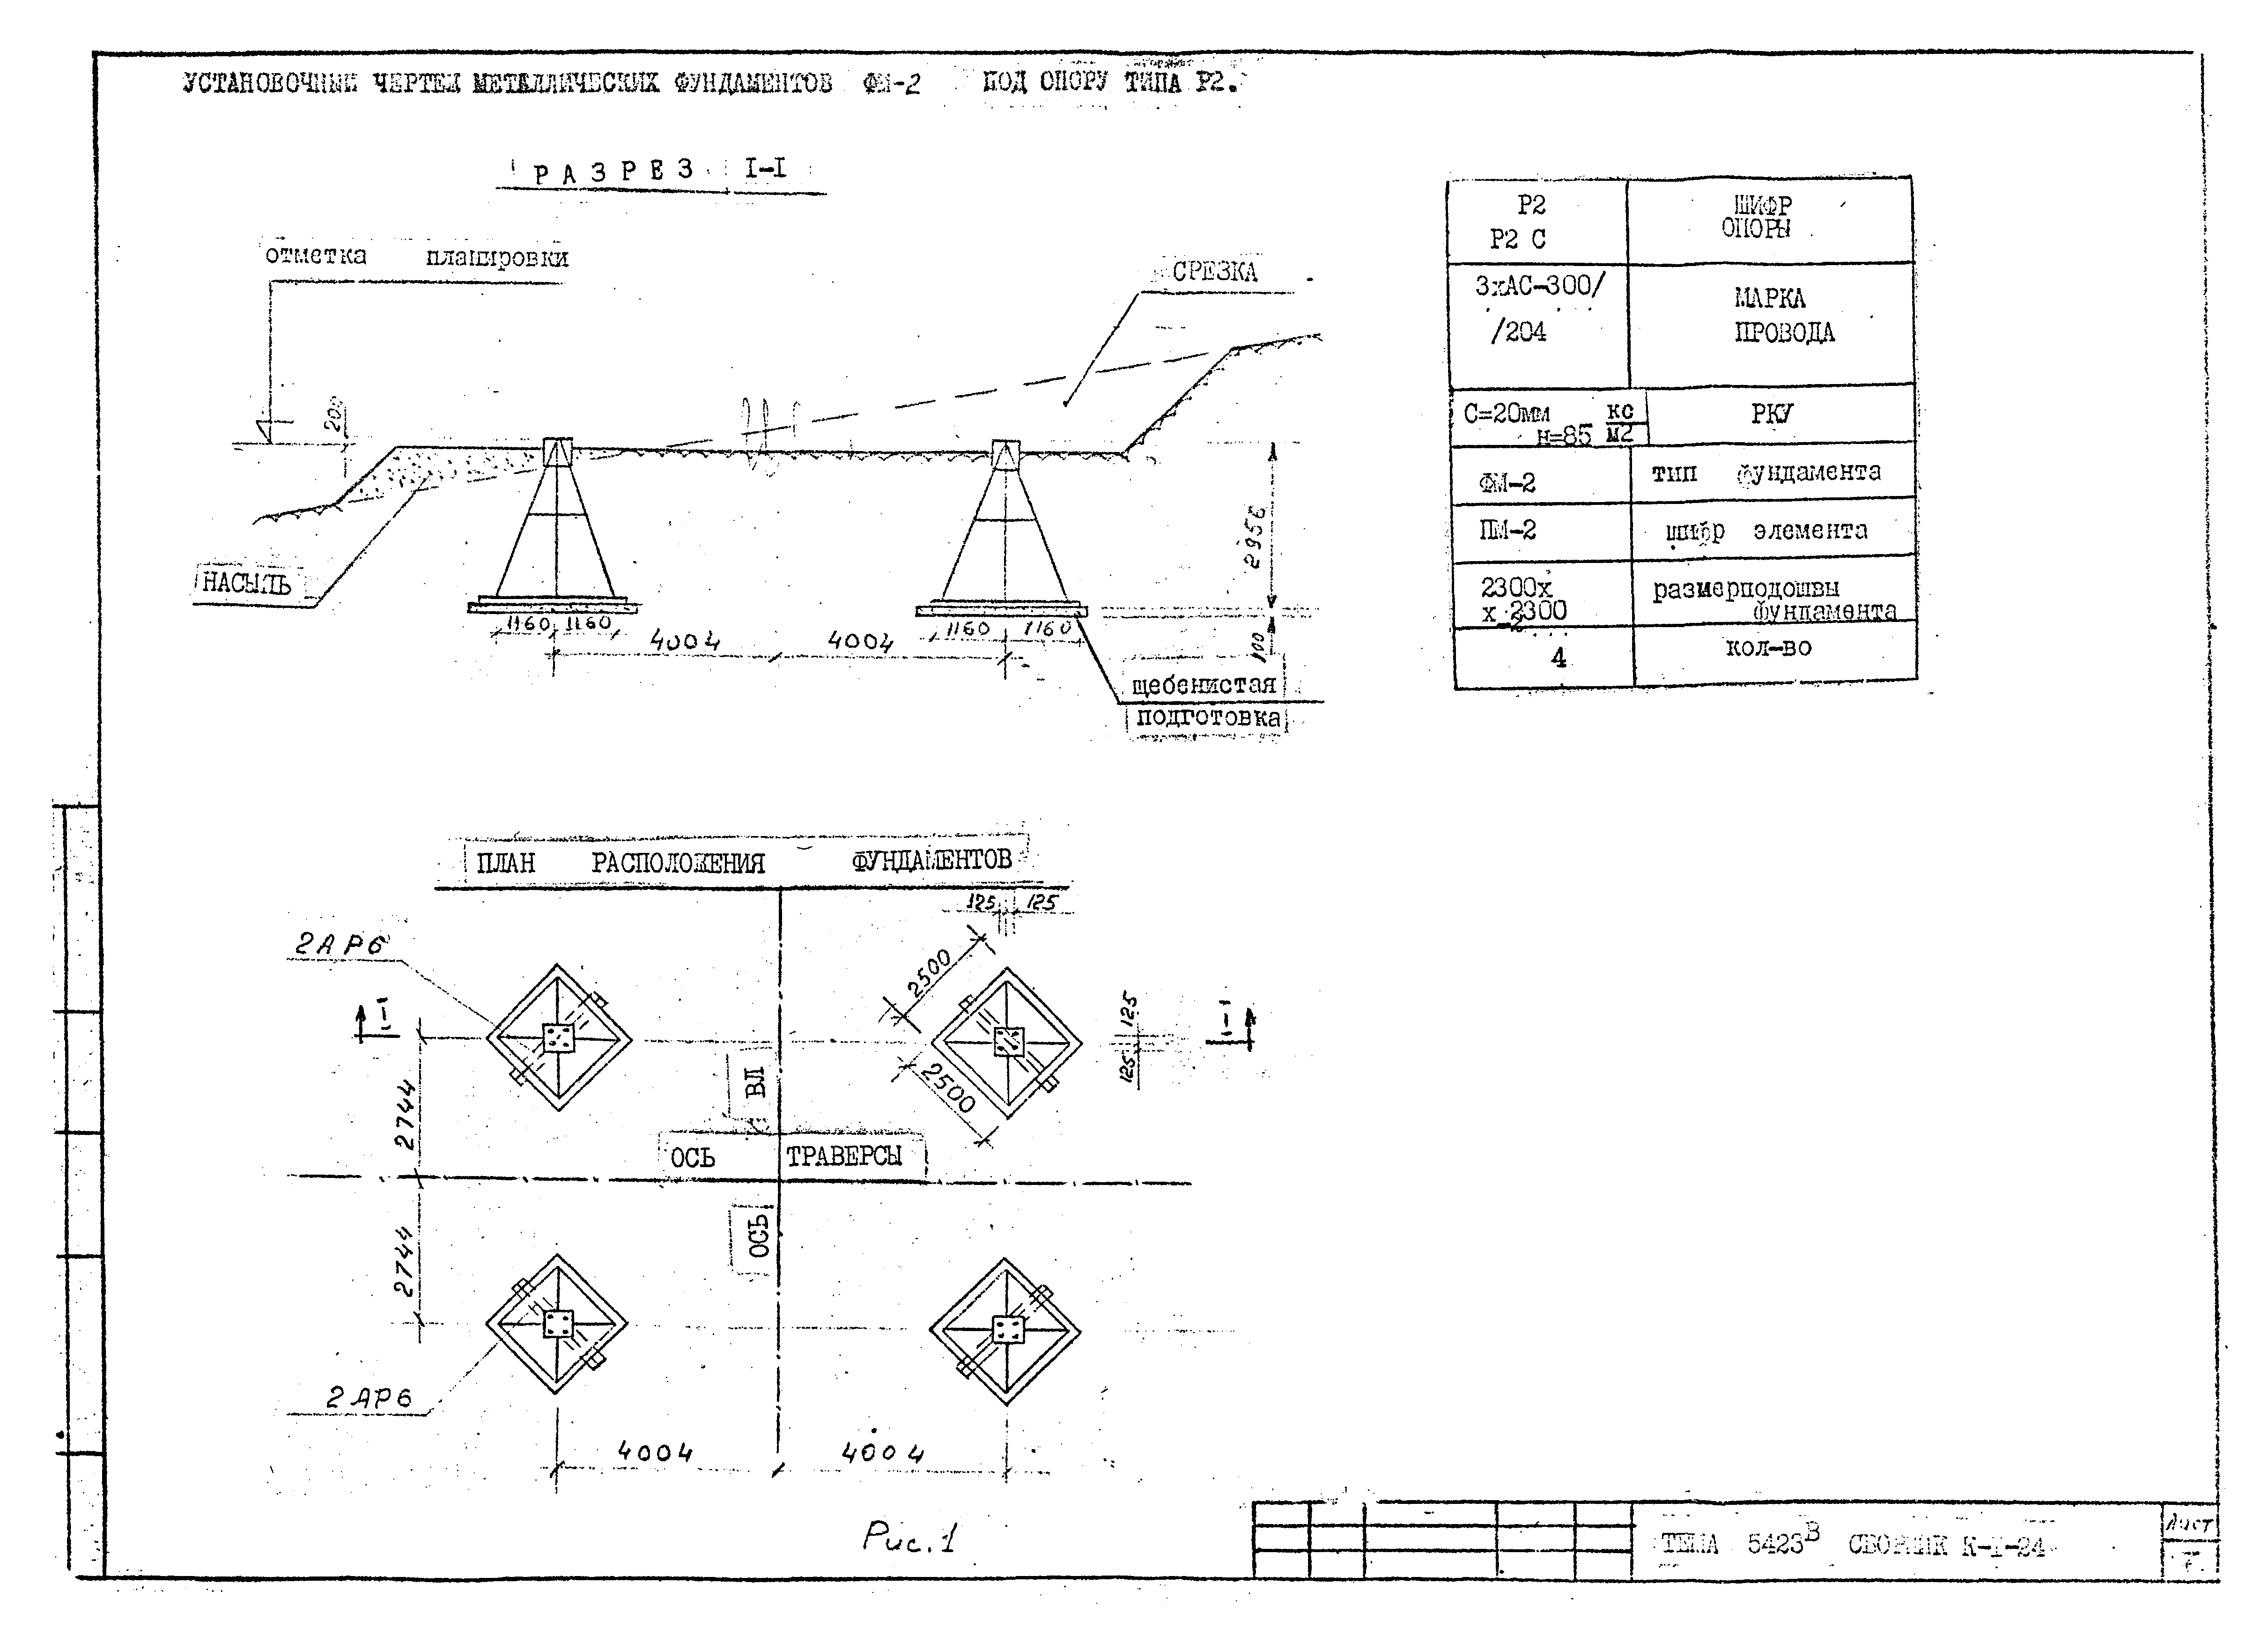 Технологическая карта К-1-24